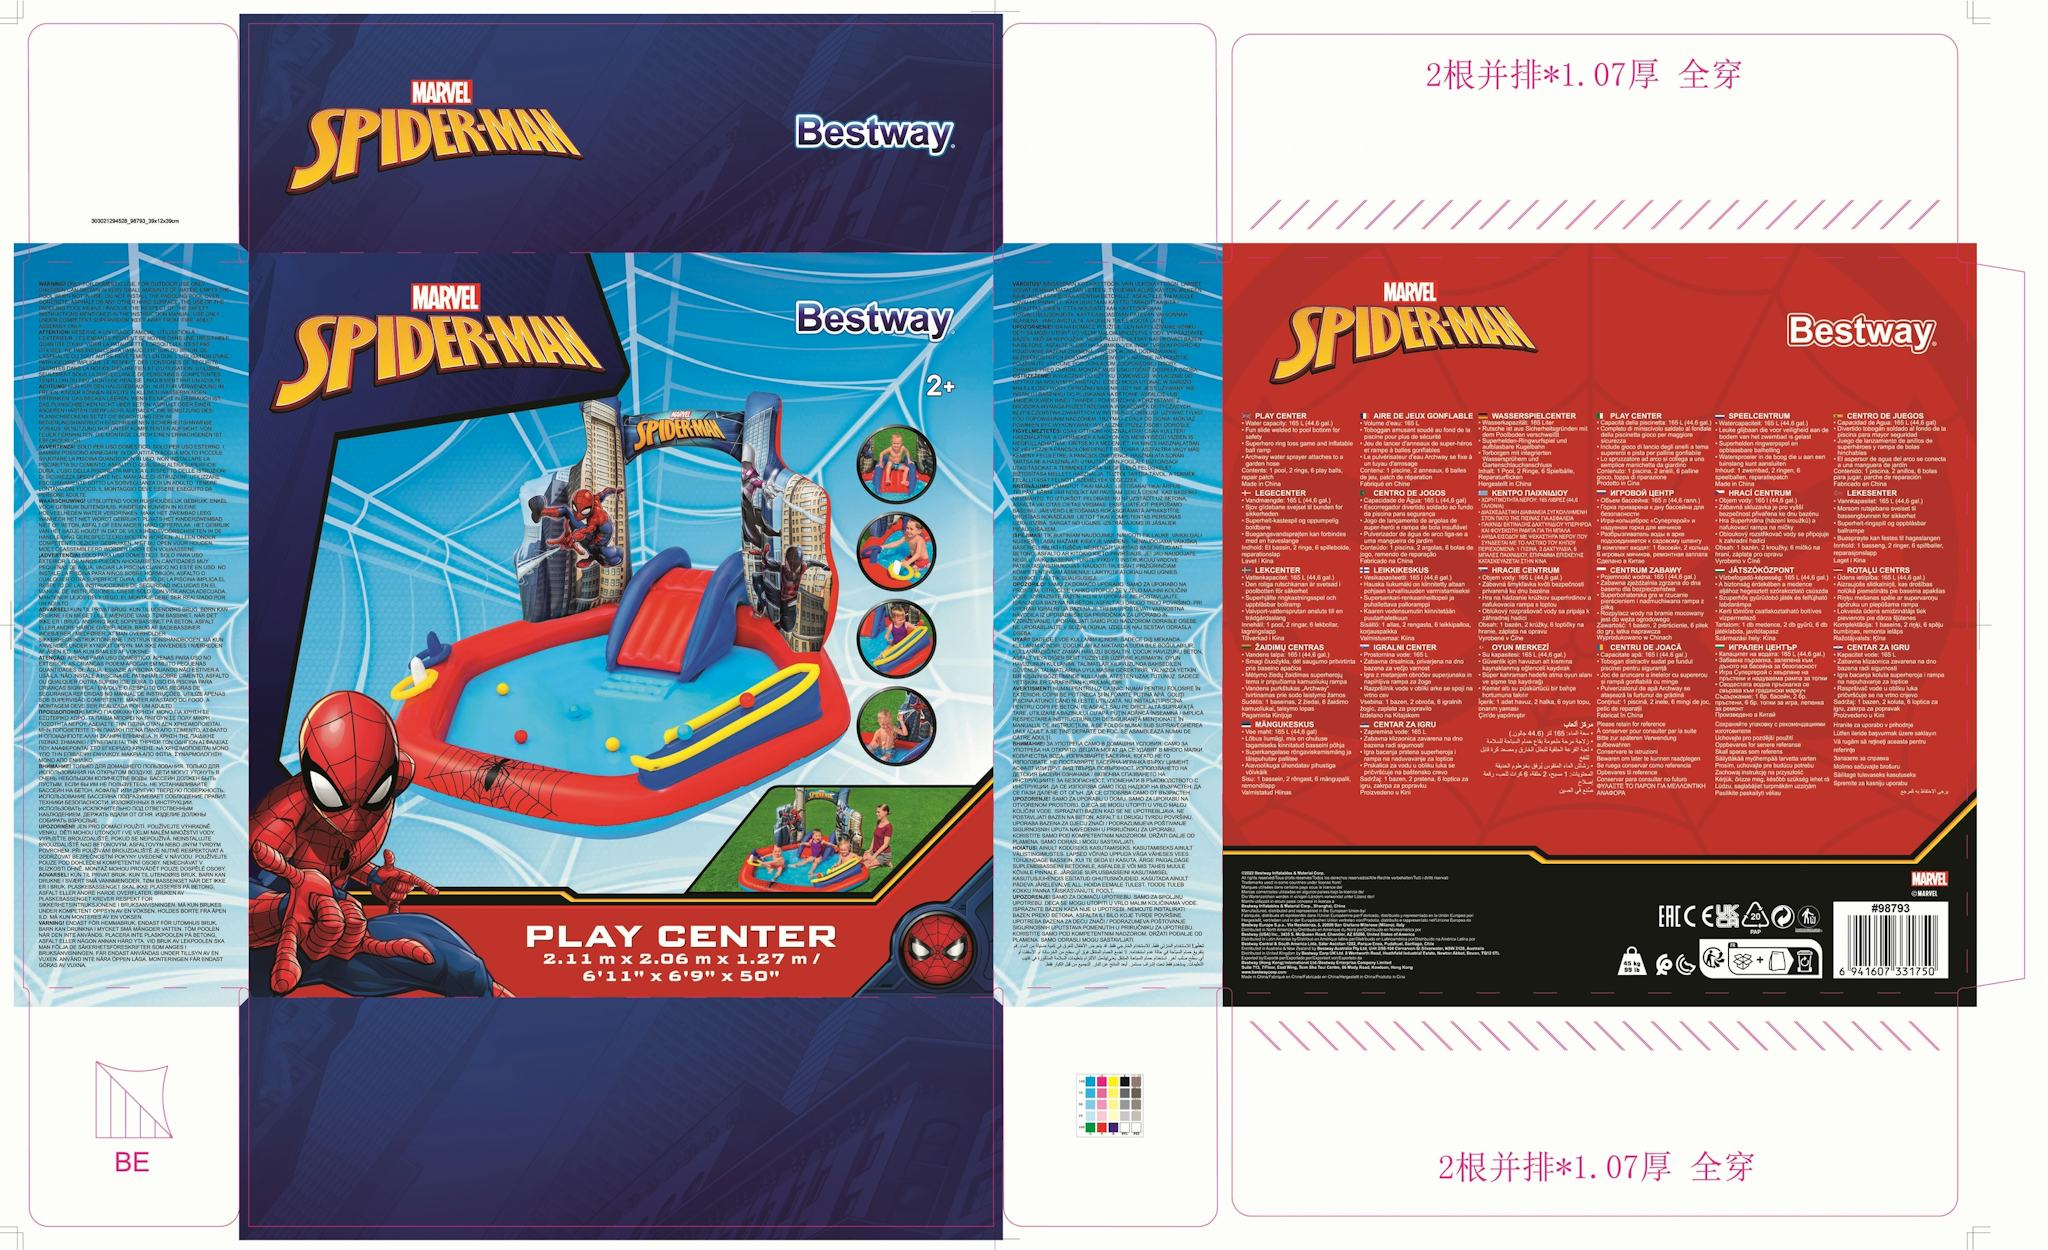 Giochi gonfiabili per bambini Playcenter gonfiabile Spider-Man Bestway 26